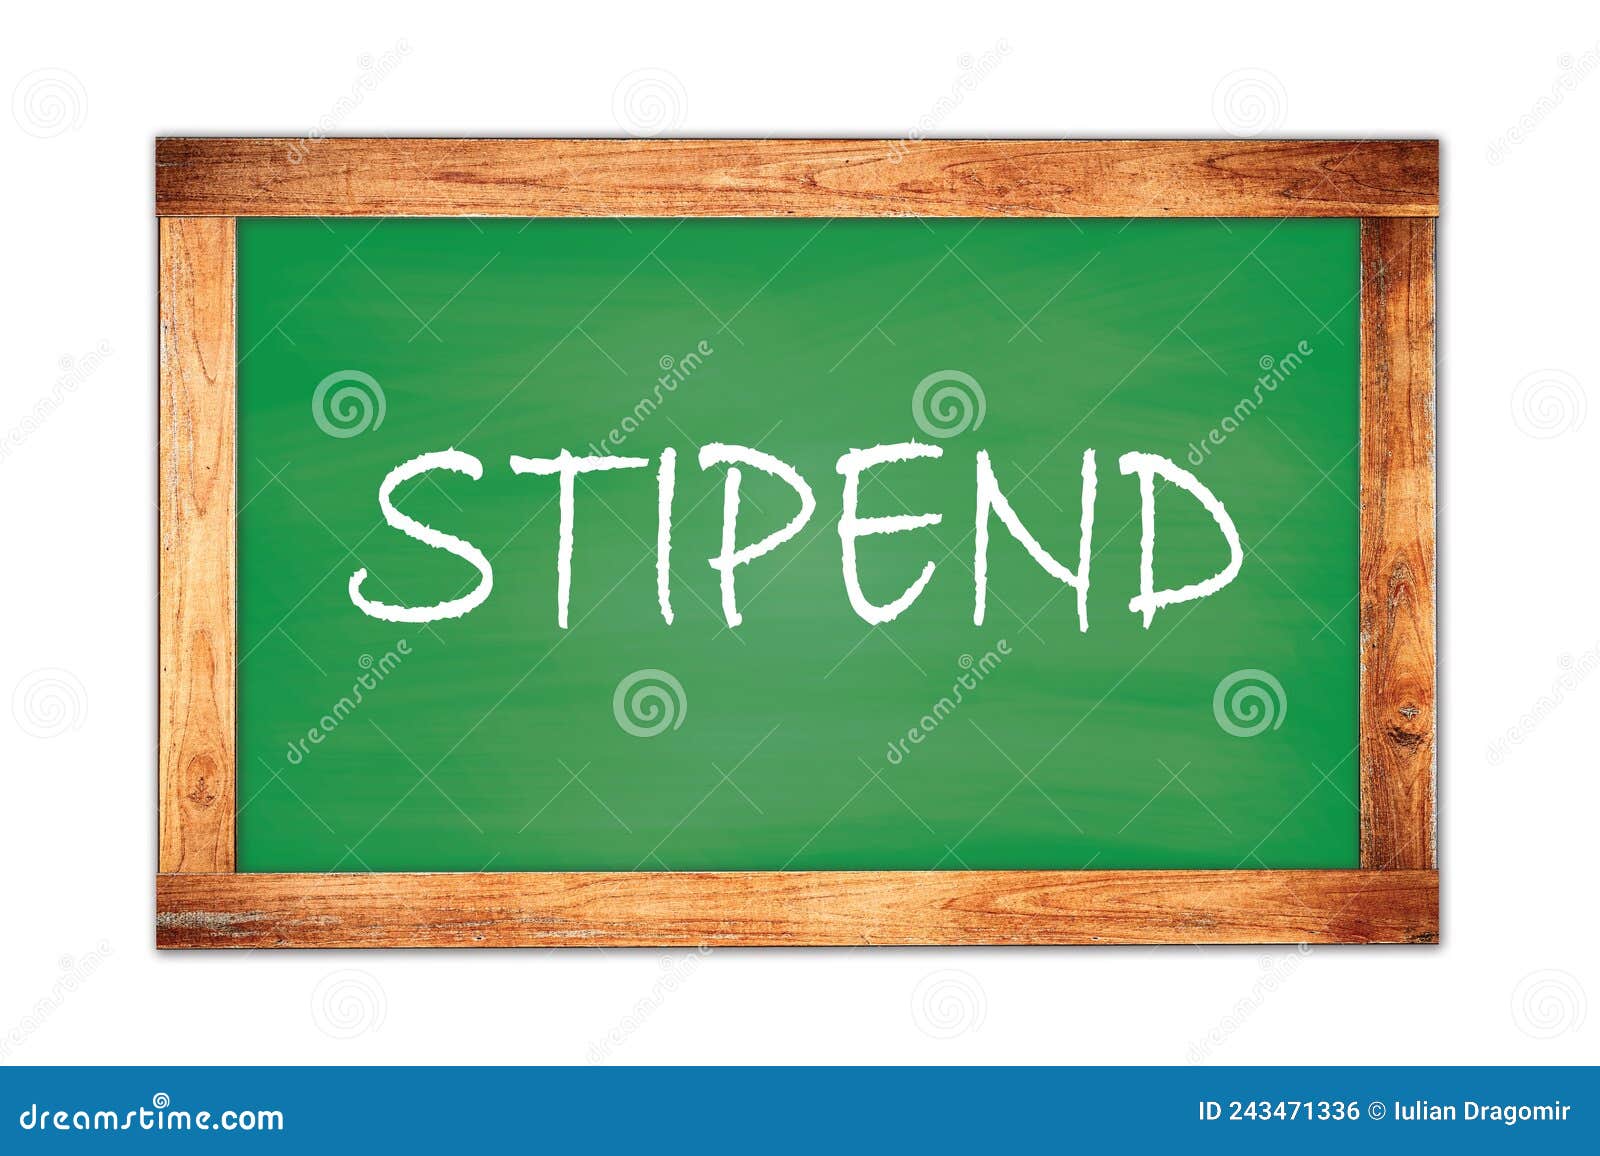 stipend text written on green school board